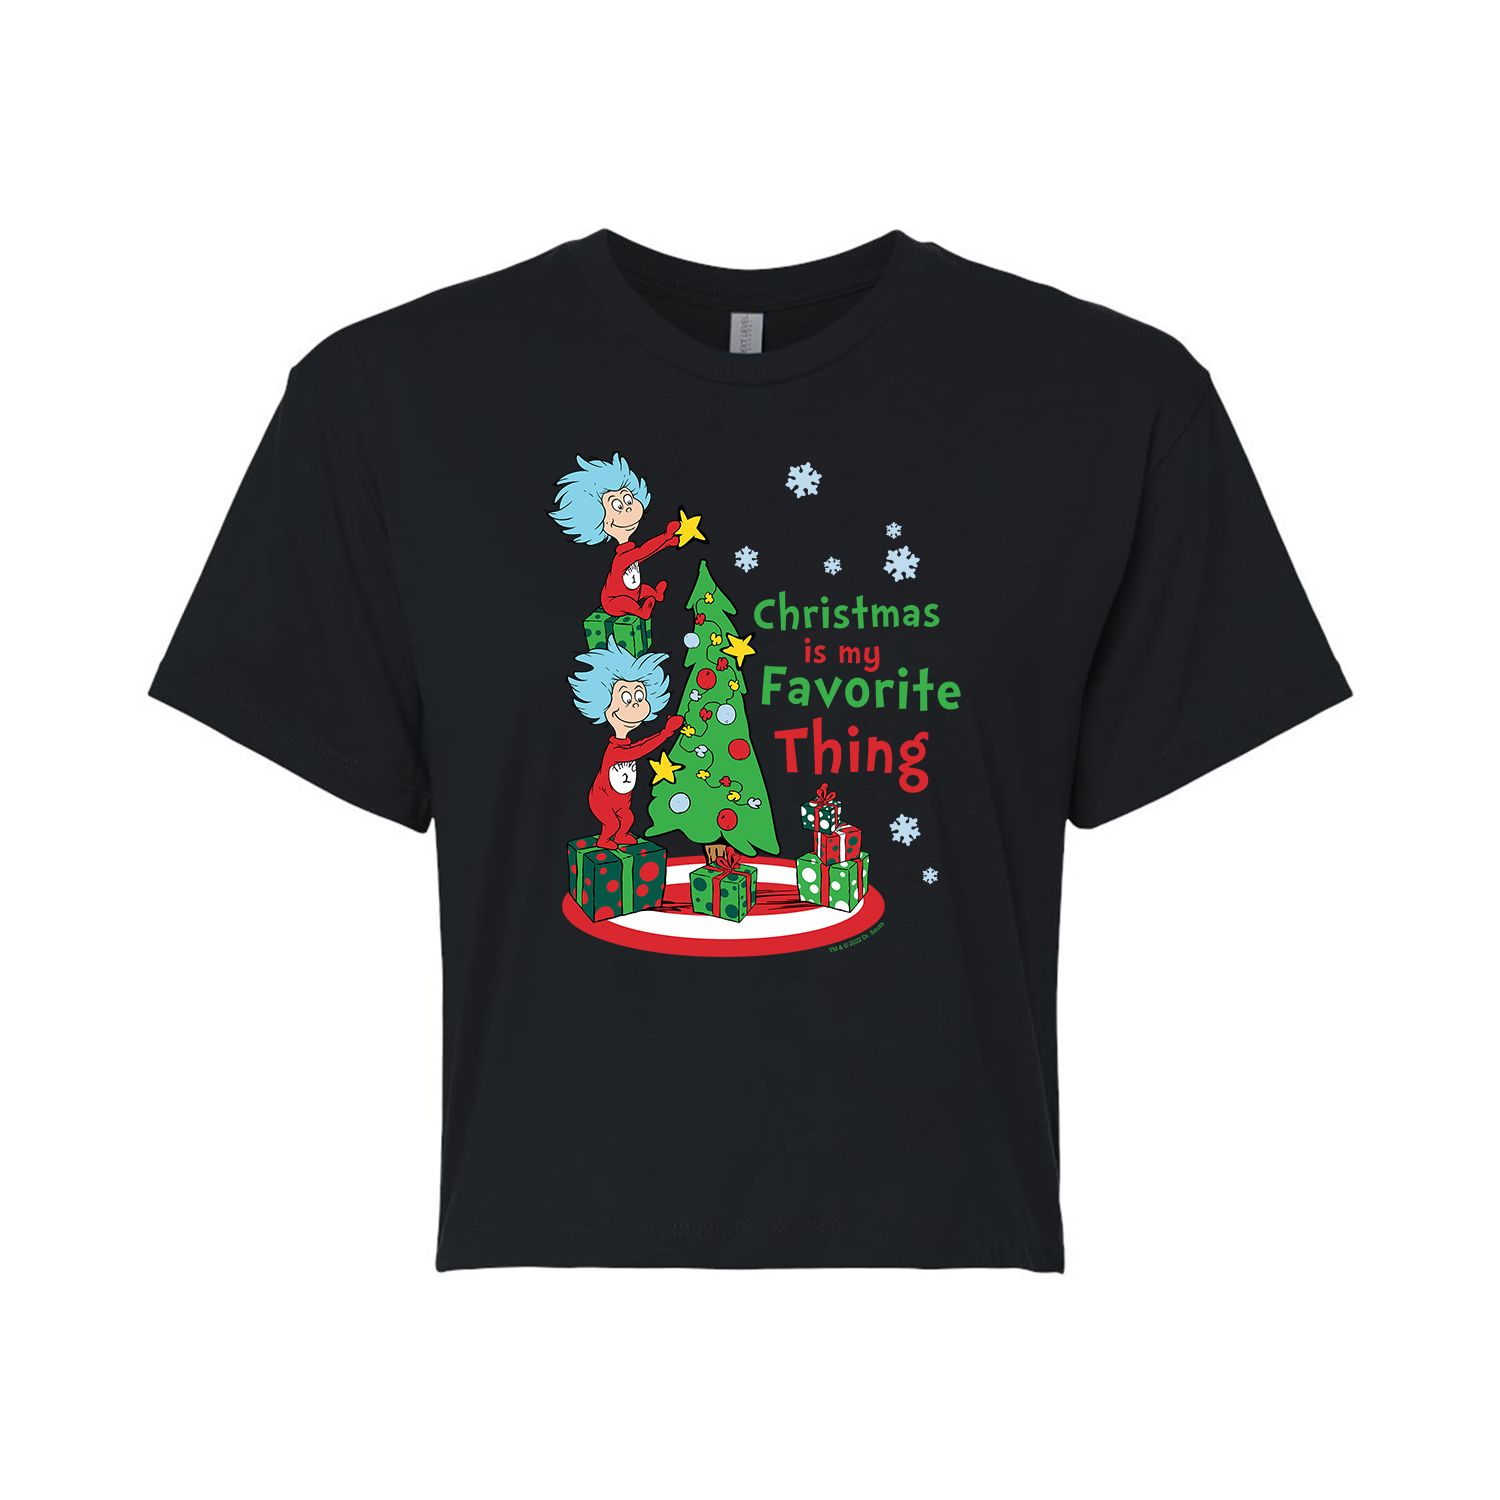 Укороченная футболка с рисунком «Доктор Сьюз» для юниоров «Рождественская любимая вещь» Licensed Character